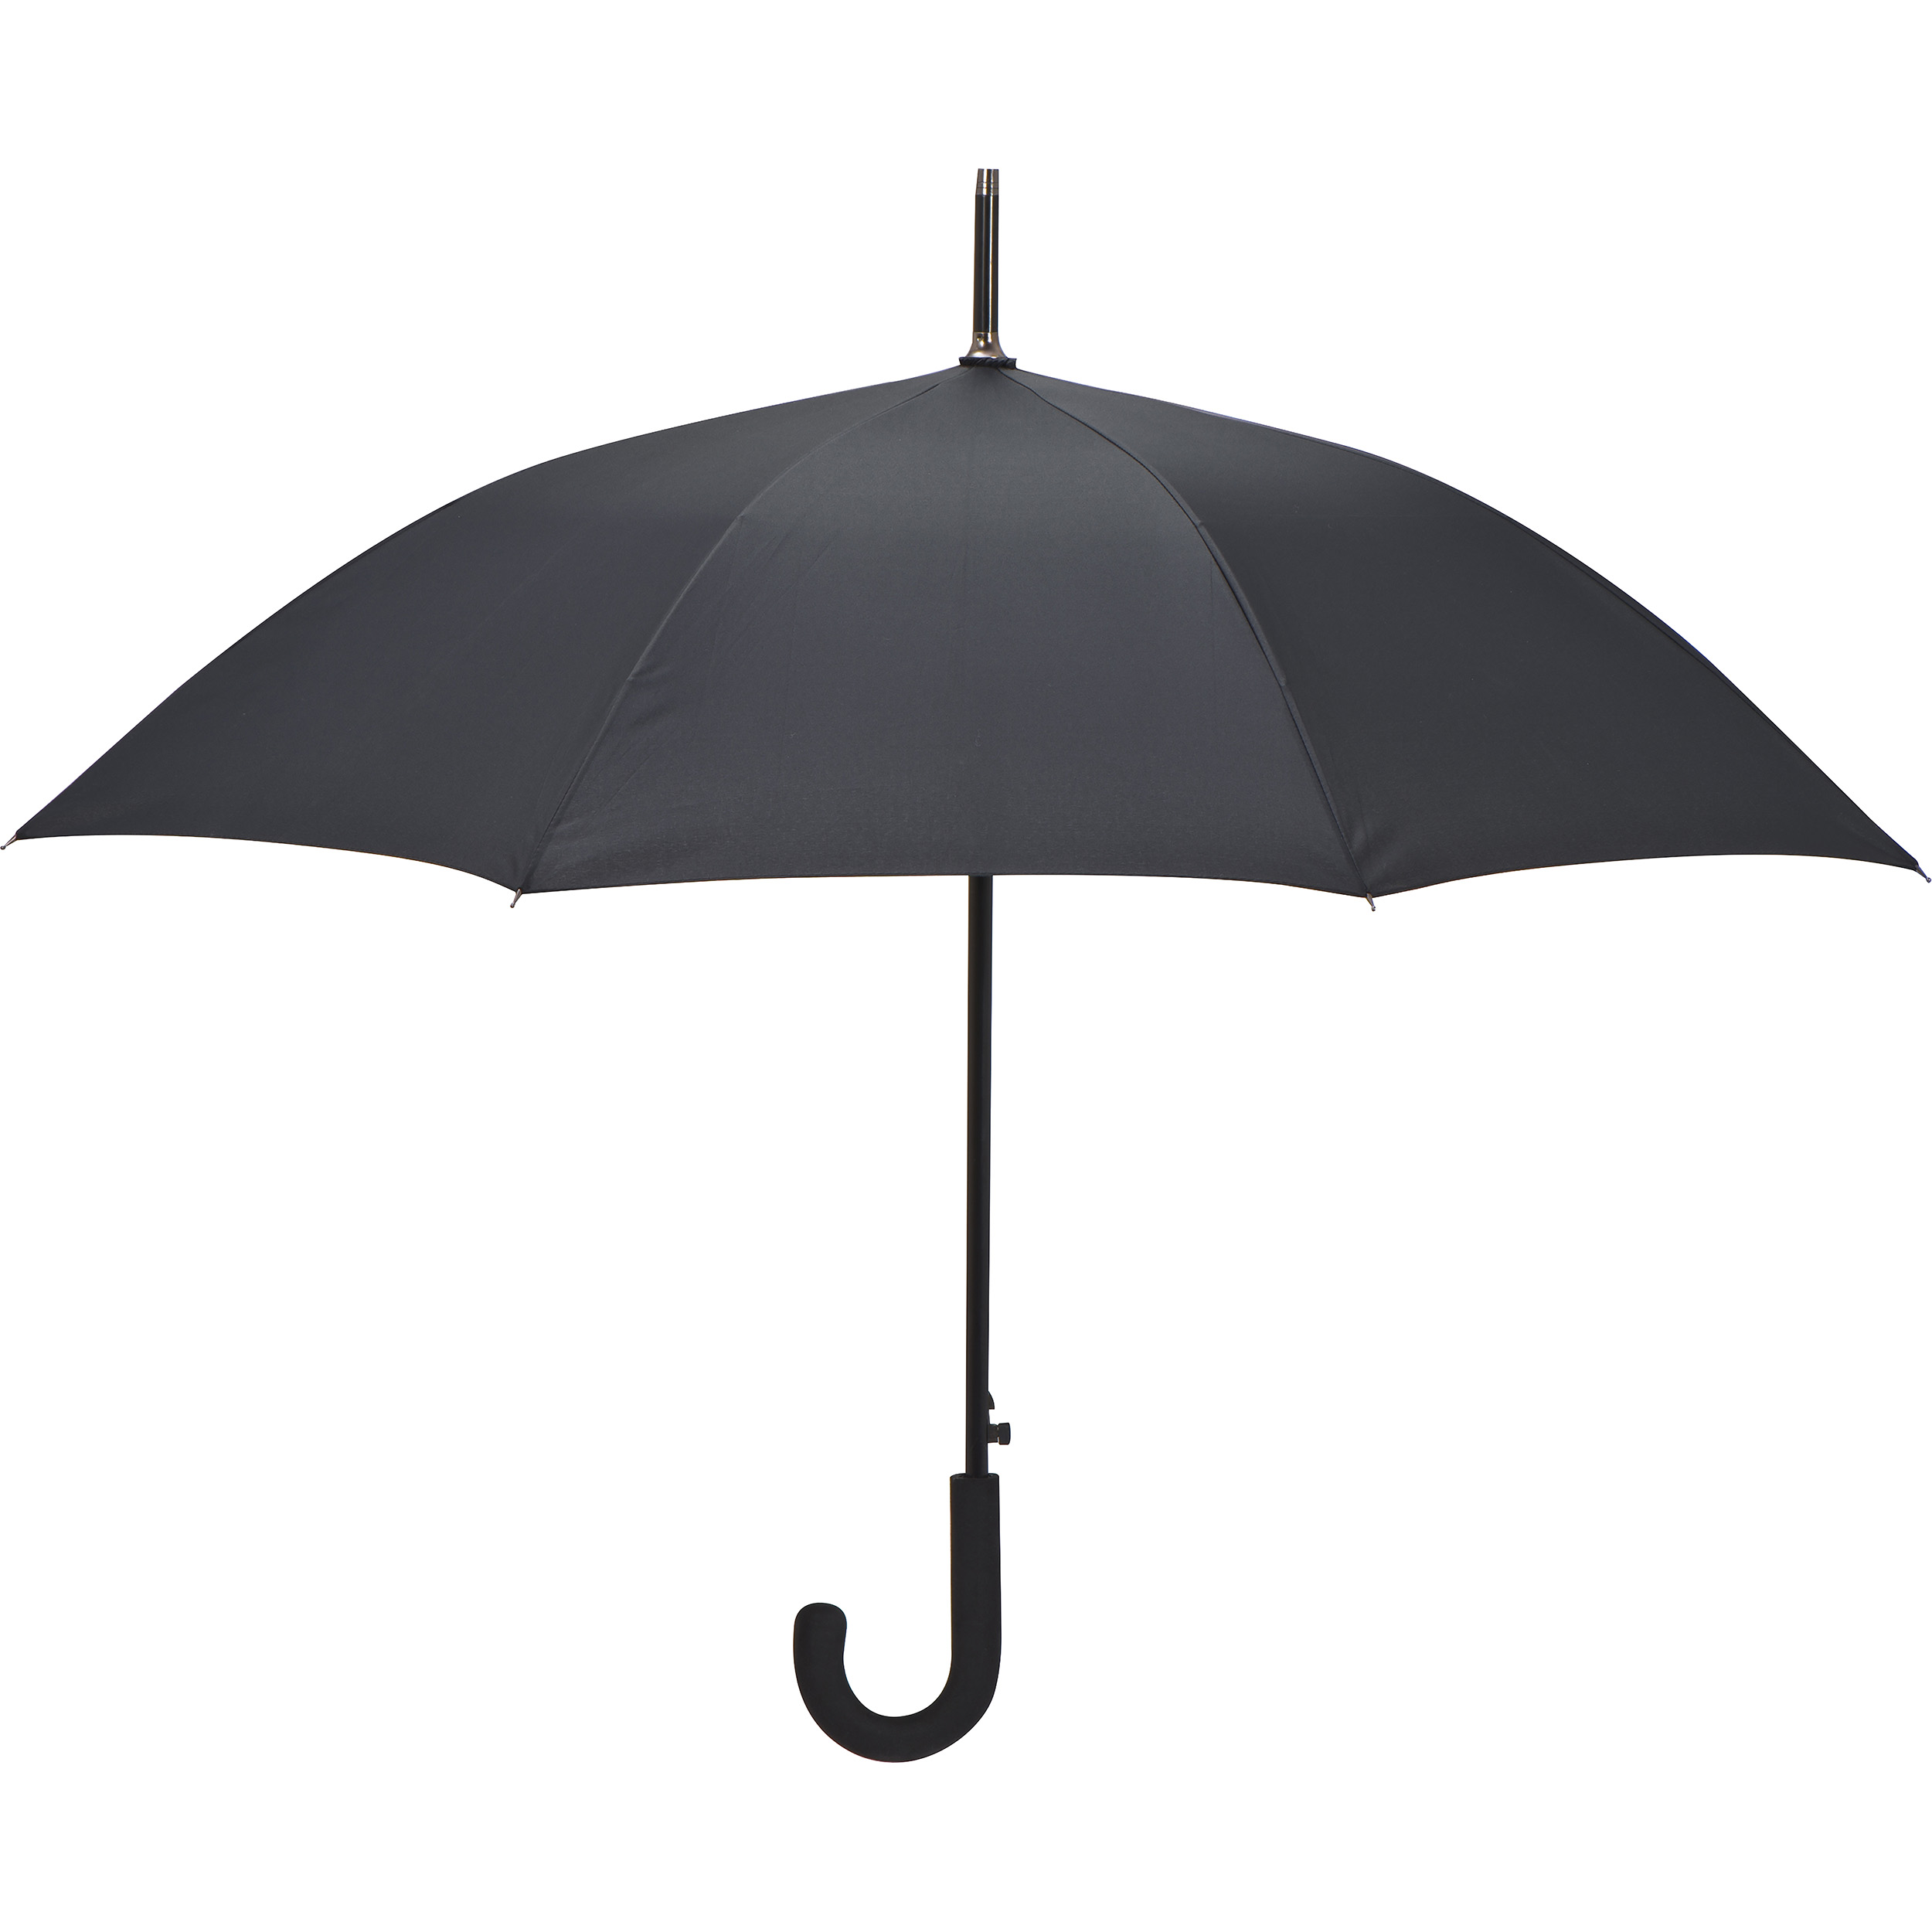 Umbrella with aluminum shaft